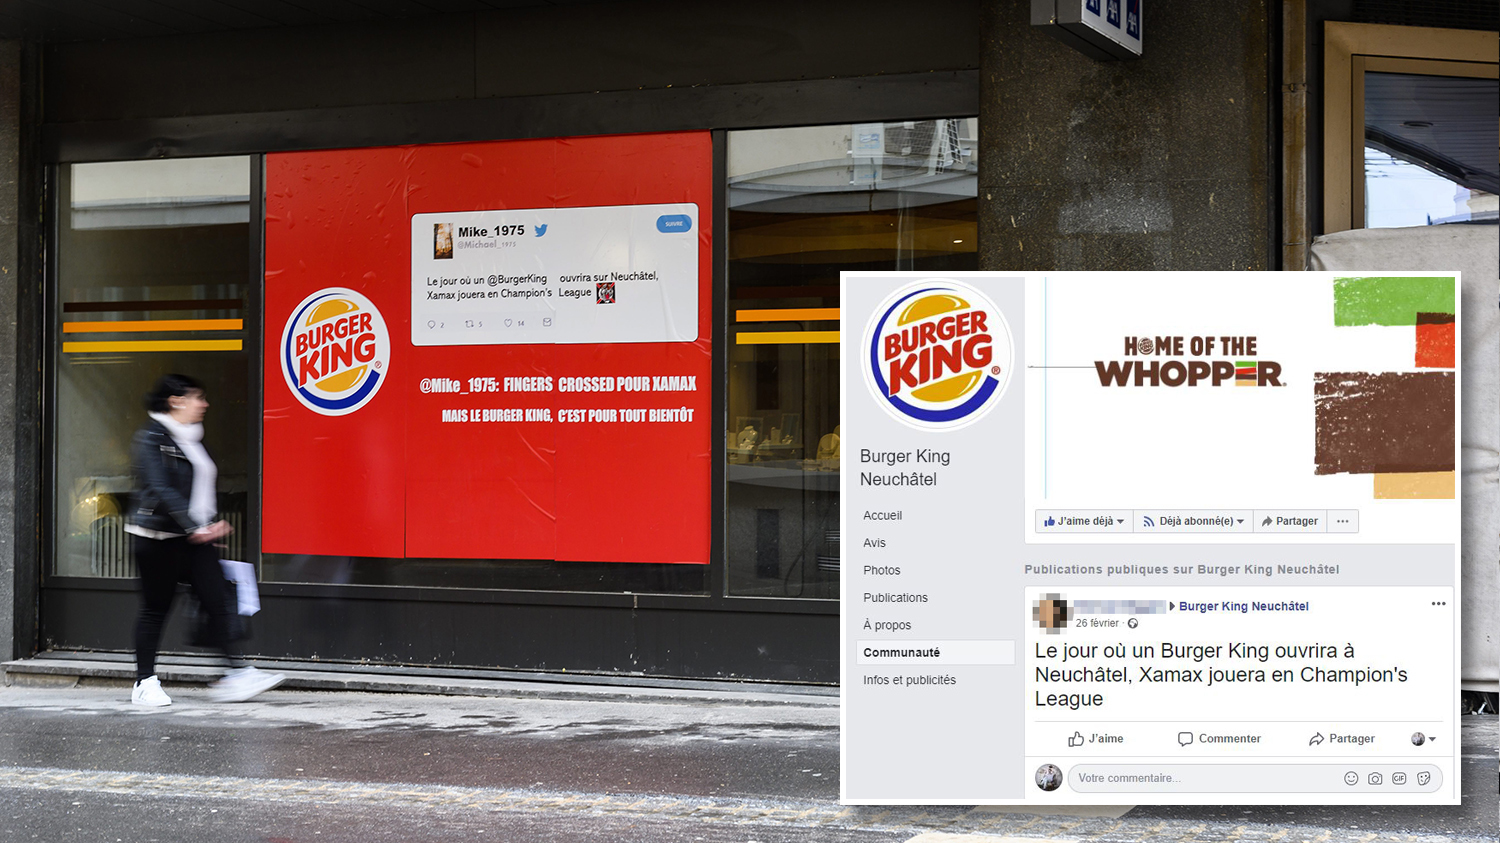 La campagne de Burger King à Neuchâtel et le message d'origine.